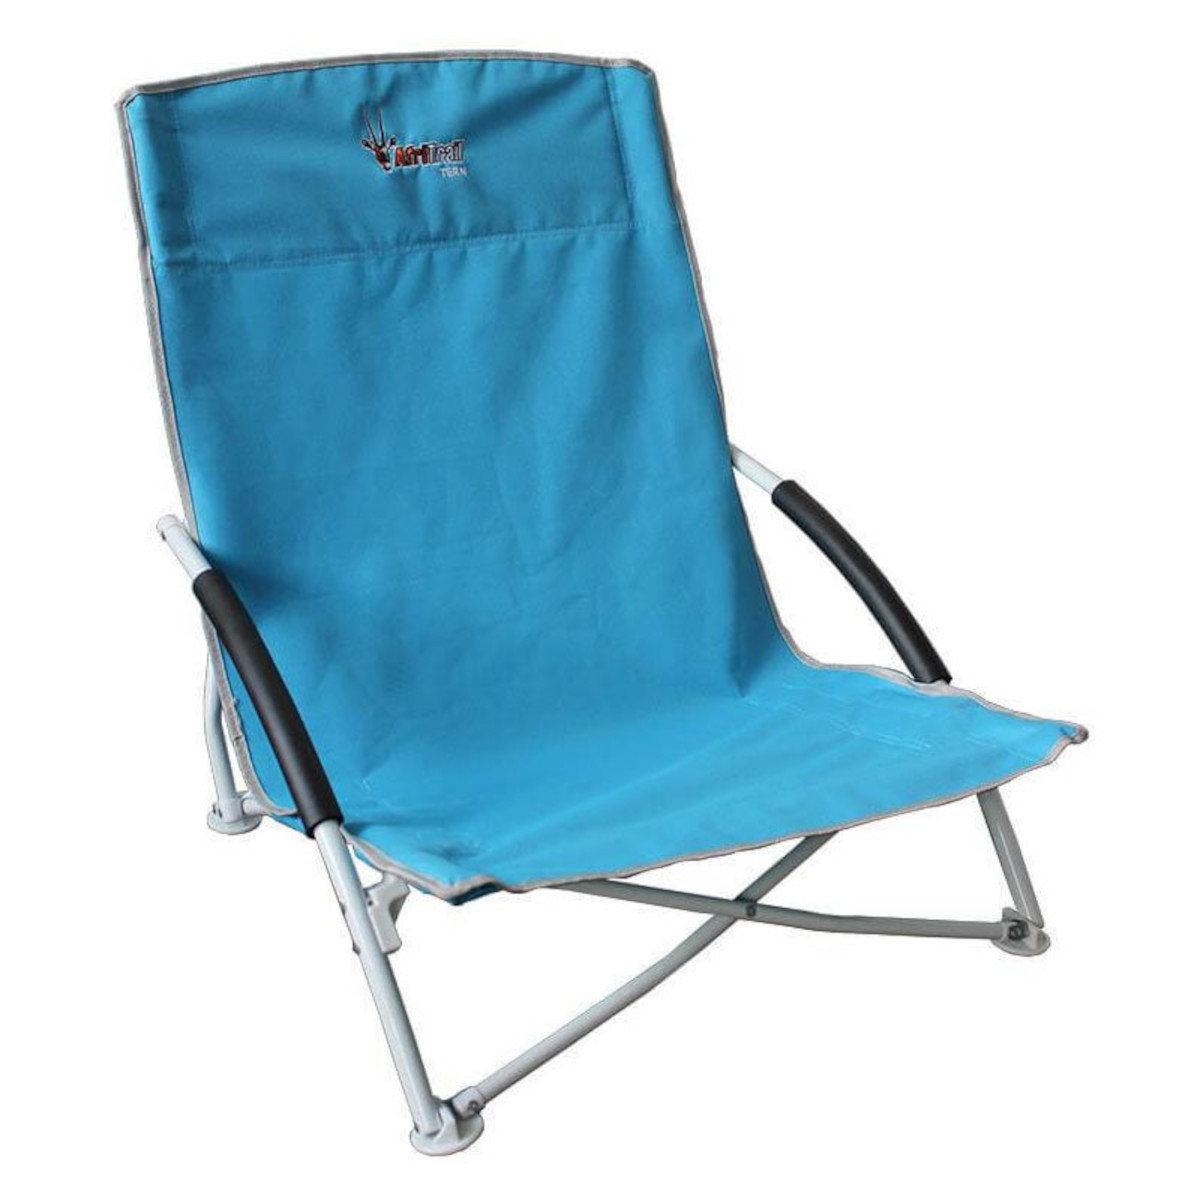 Afritrail Tern Beach Chair-camping chair